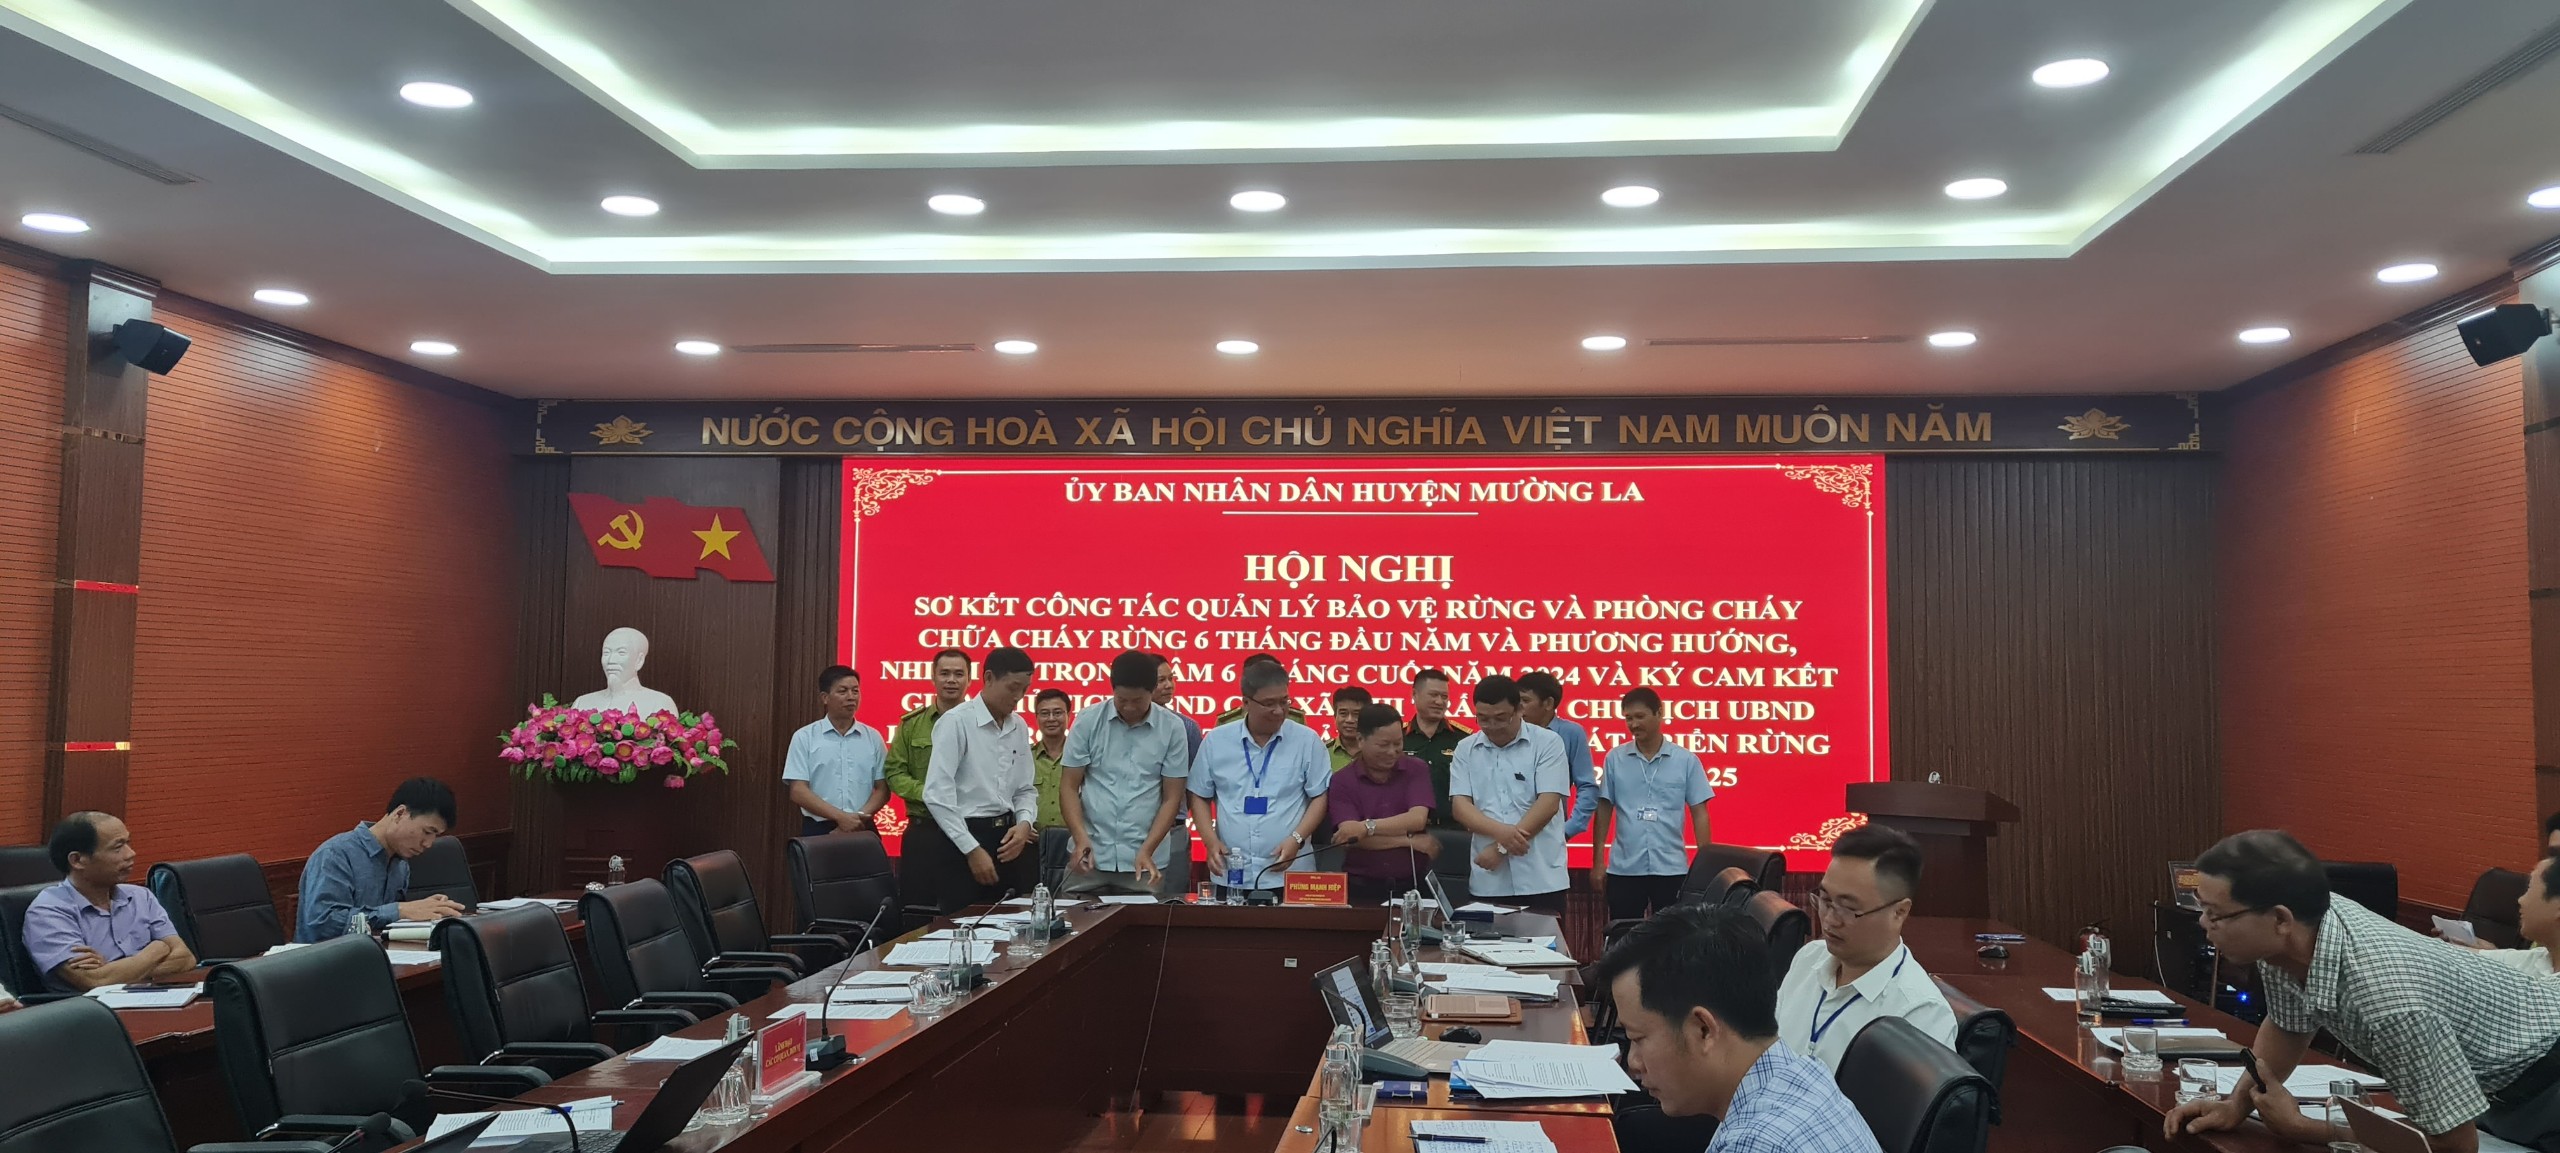 Ủy ban nhân dân huyện Mường La tổ chức ký cam kết giữa Chủ tịch UBND các xã, thị trấn với Chủ tịch UBND huyện trong công tác quản lý bảo vệ, phát triển rừng và phòng cháy chữa cháy rừng năm 2024-2025 